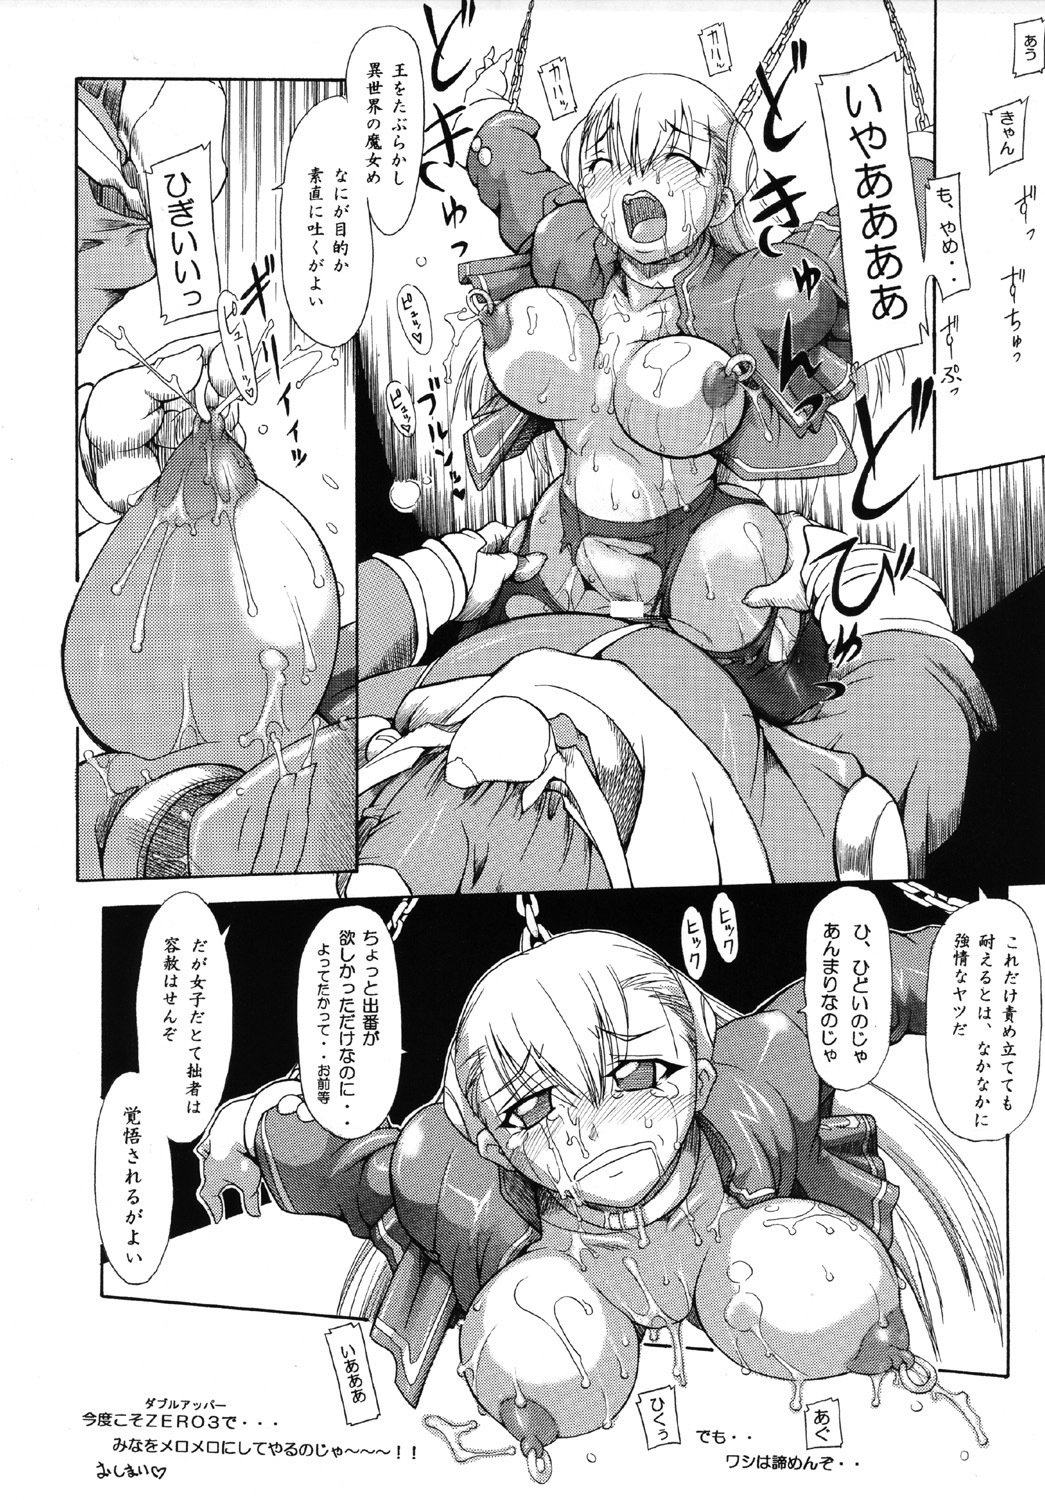 [Furuya (TAKE)] Ingrid no JAM Tsuke (Capcom Fighting Jam) page 30 full